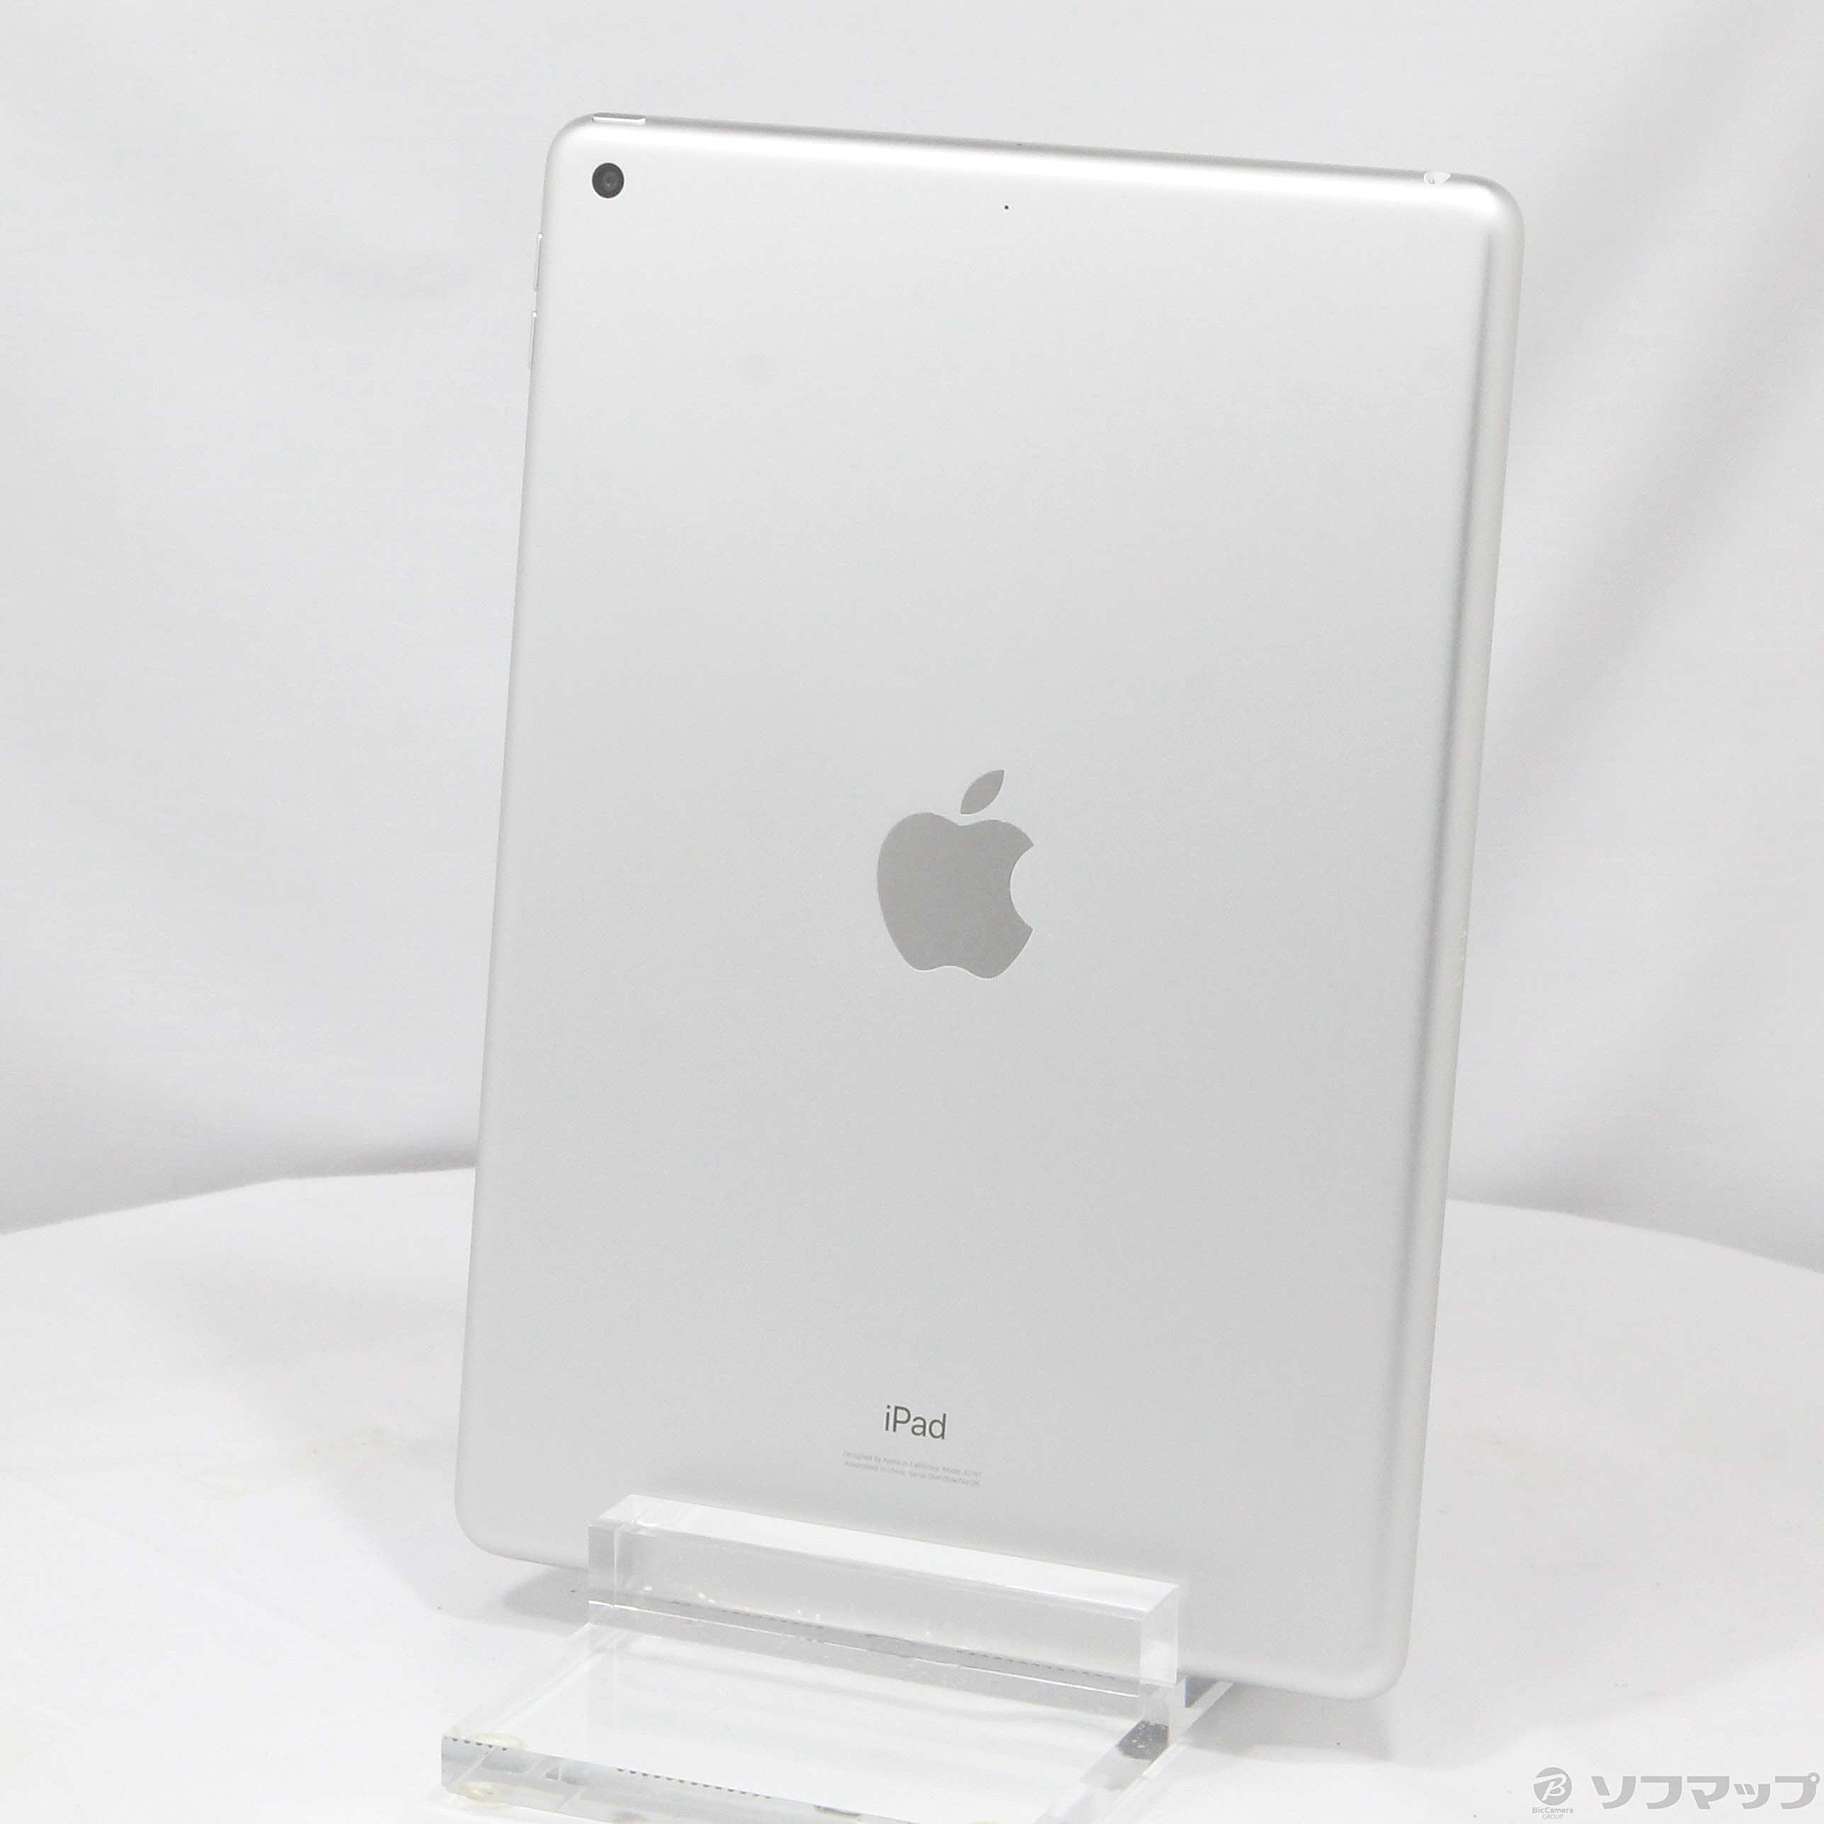 Apple iPad Wi-Fi 32GB MW752J/A シルバー